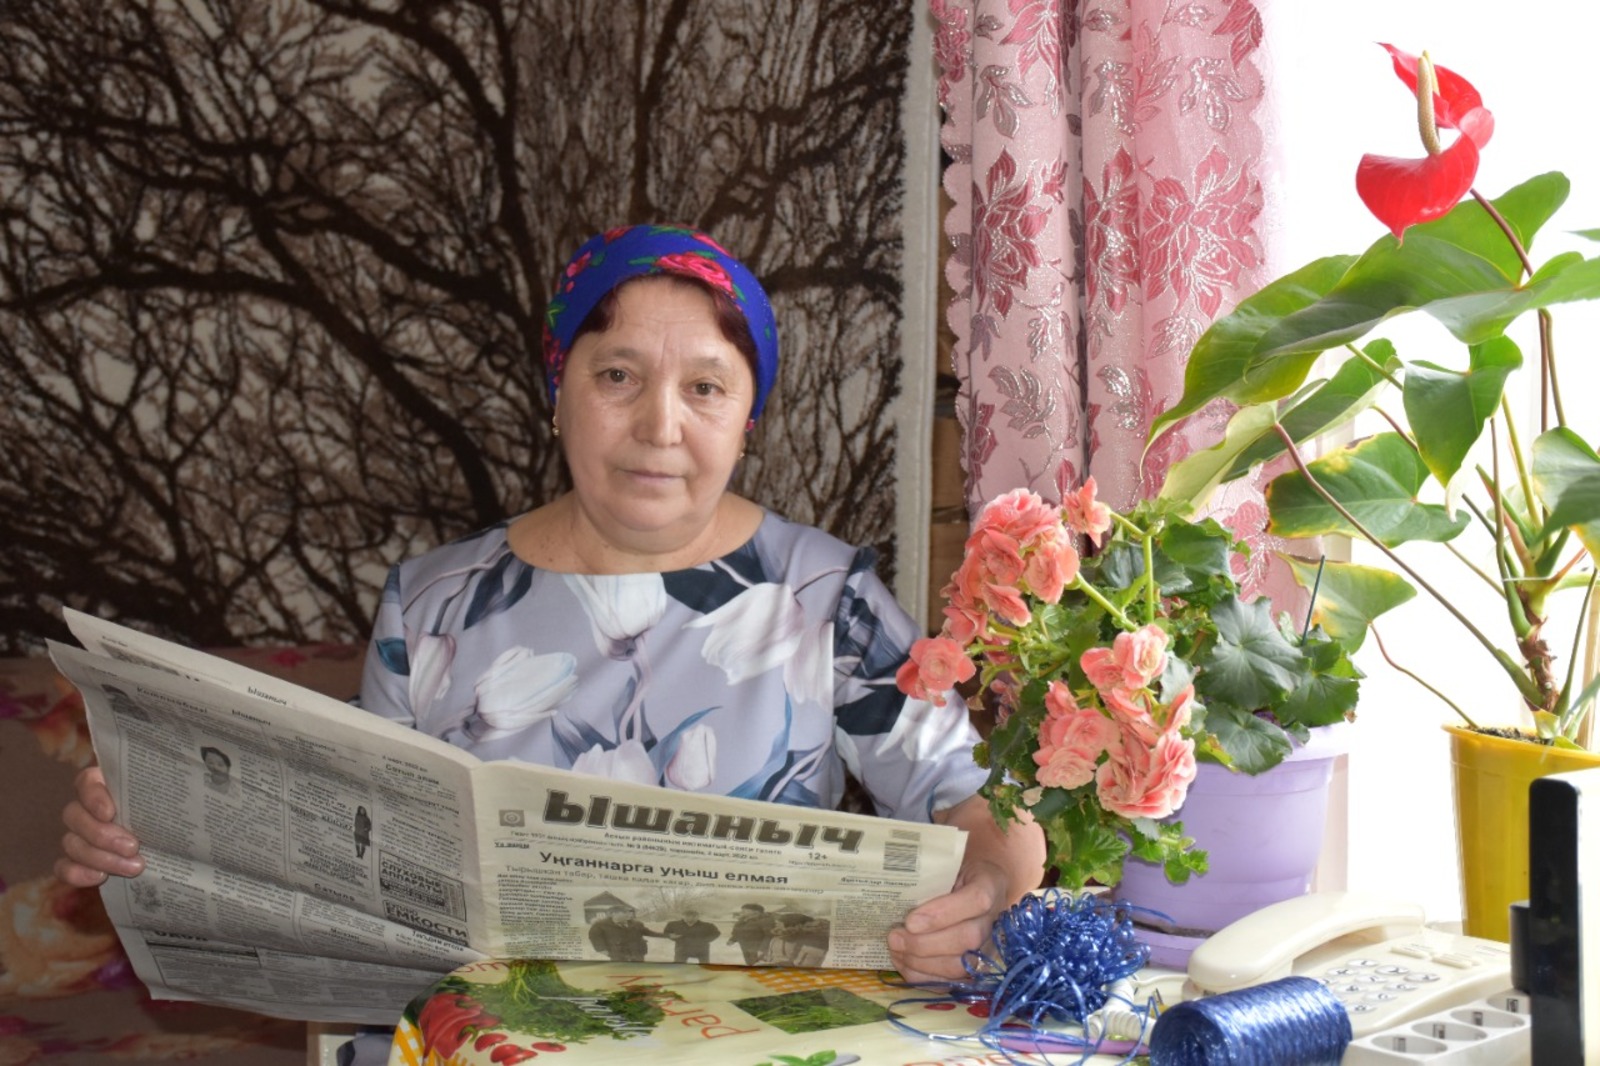 Я счастливая бабушка, — говорит Гульнафира Галиева